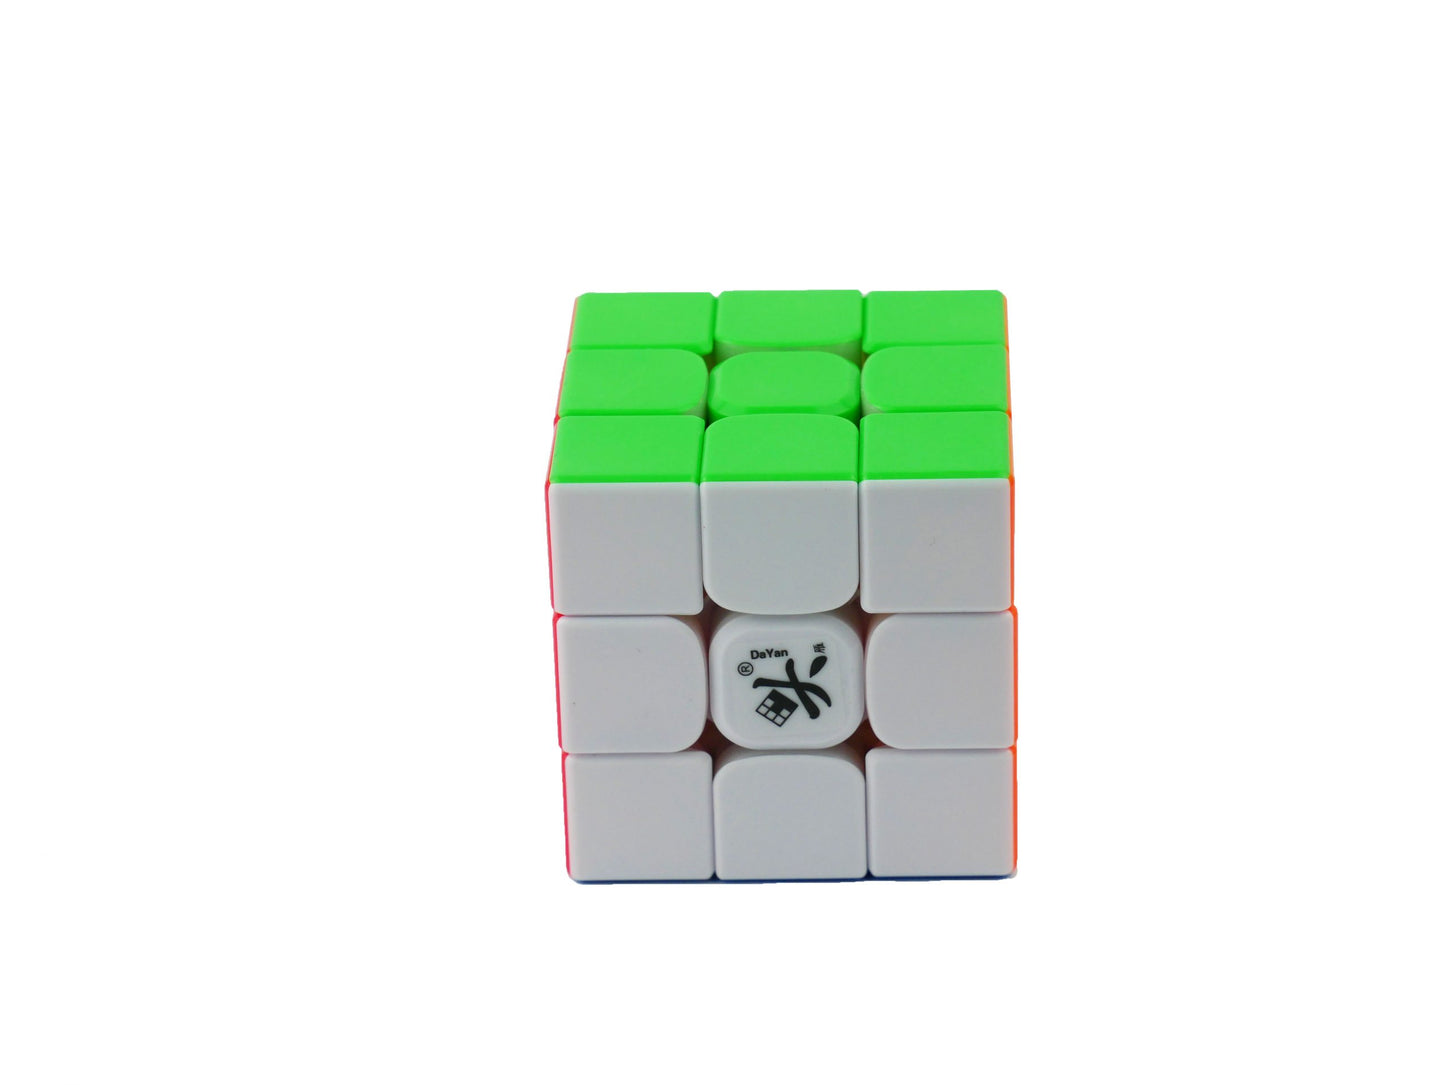 DaYan Tengyun V2 M 3x3 (stickerless)